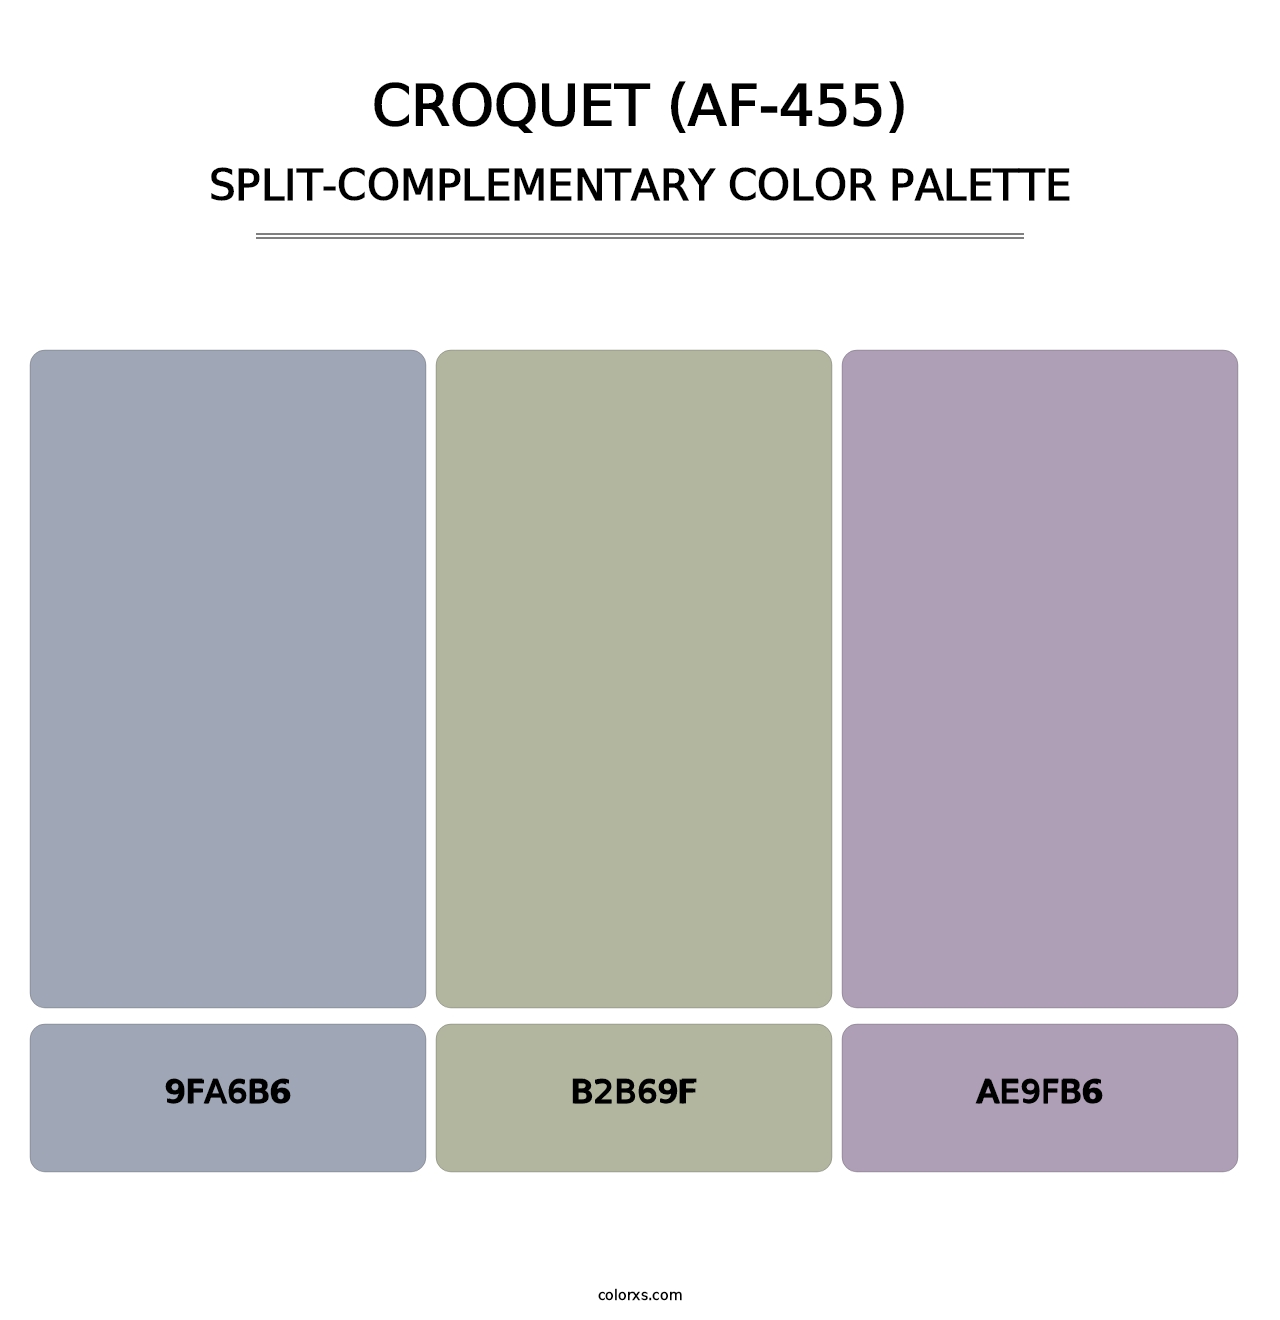 Croquet (AF-455) - Split-Complementary Color Palette